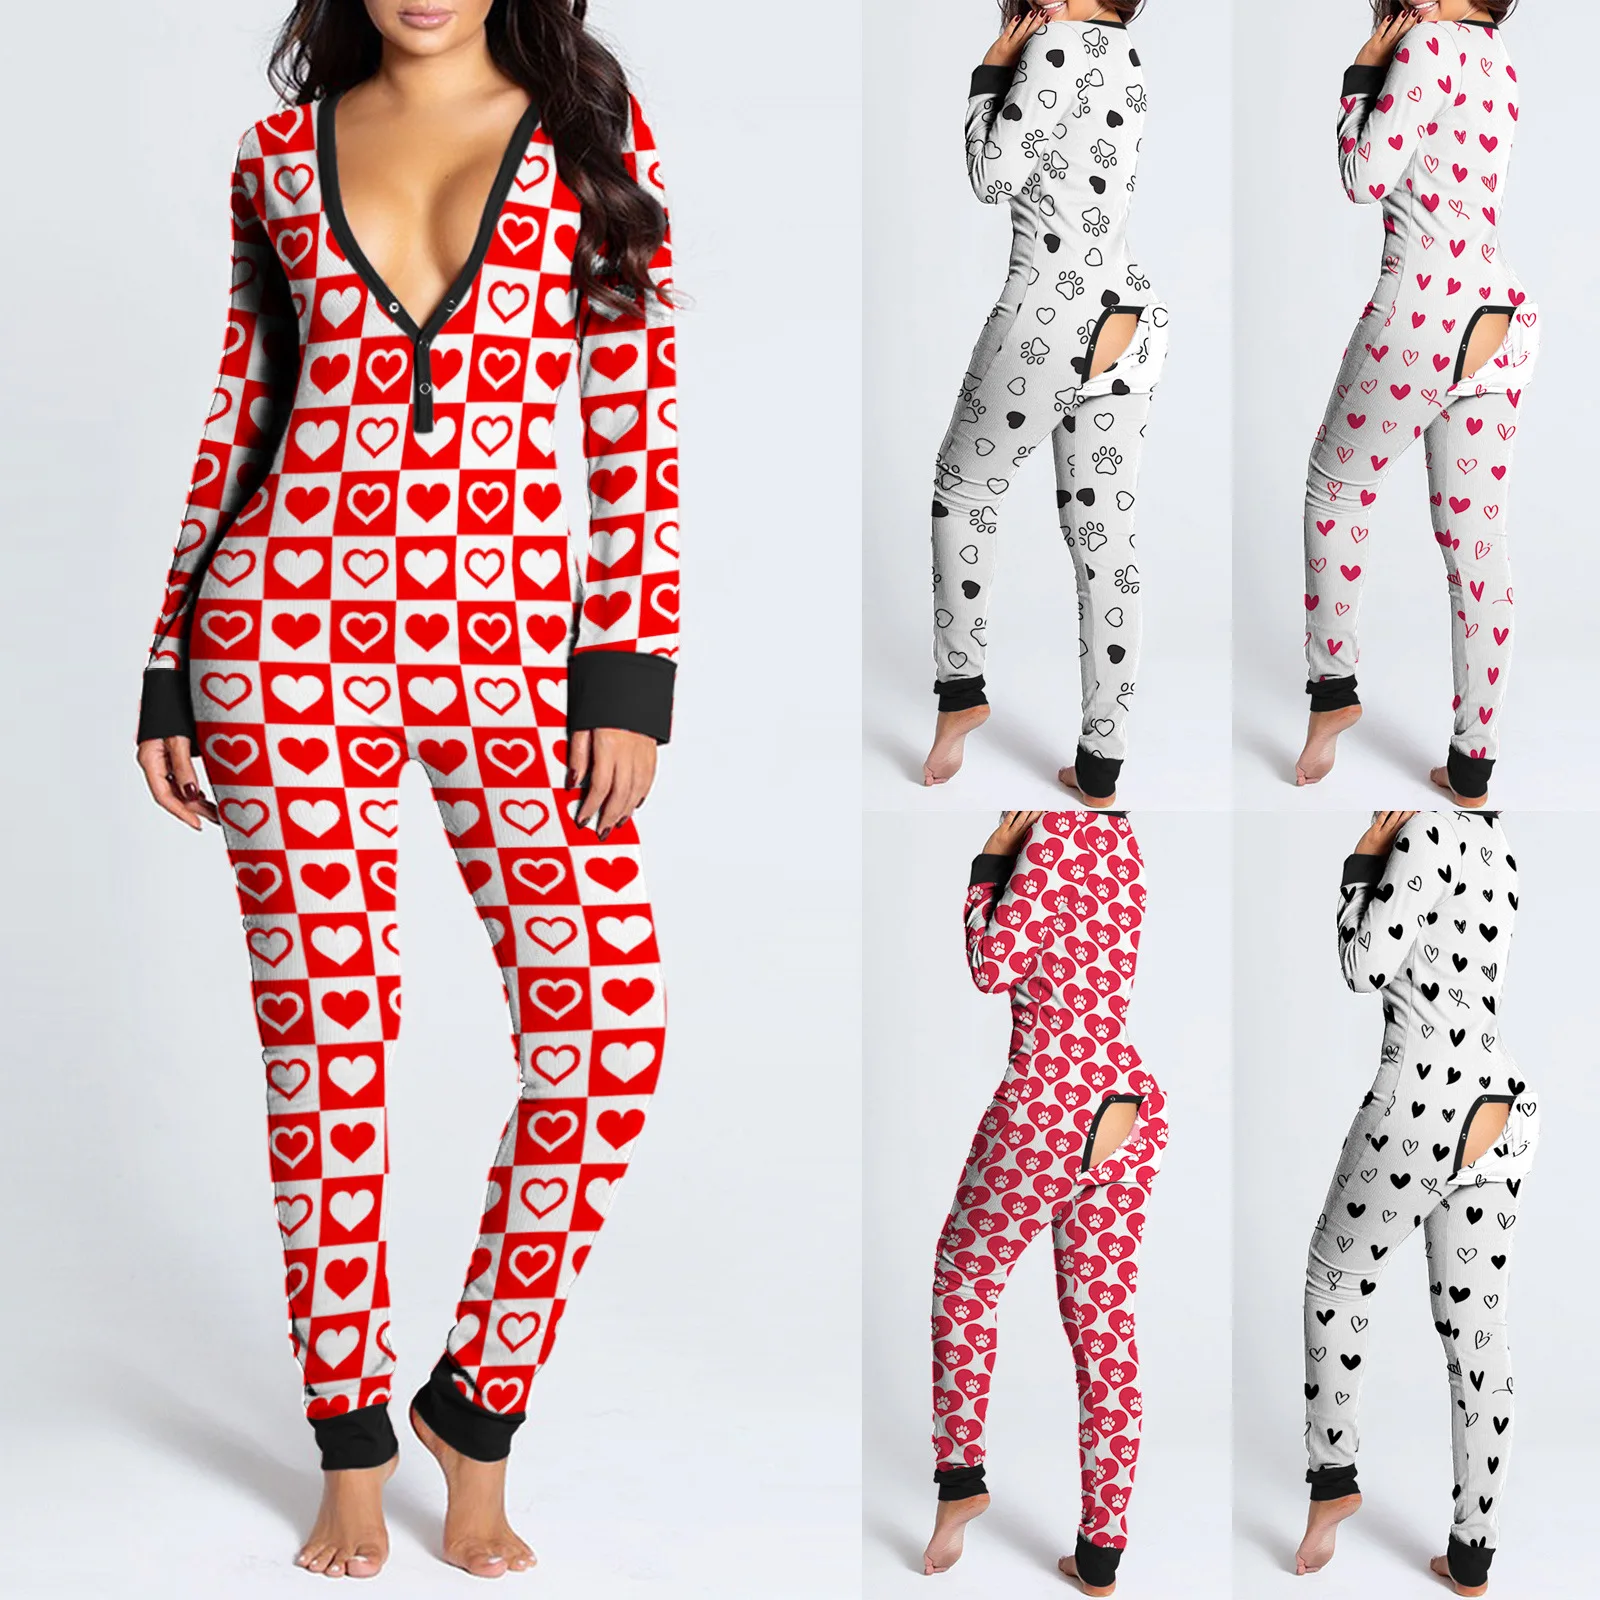 

New Women Pajamas Printed Sleepwear Loungewear Christmas Onesie 2021 Long Sleeve Onsies For Christmas Sleepwear Pajamas Onesi